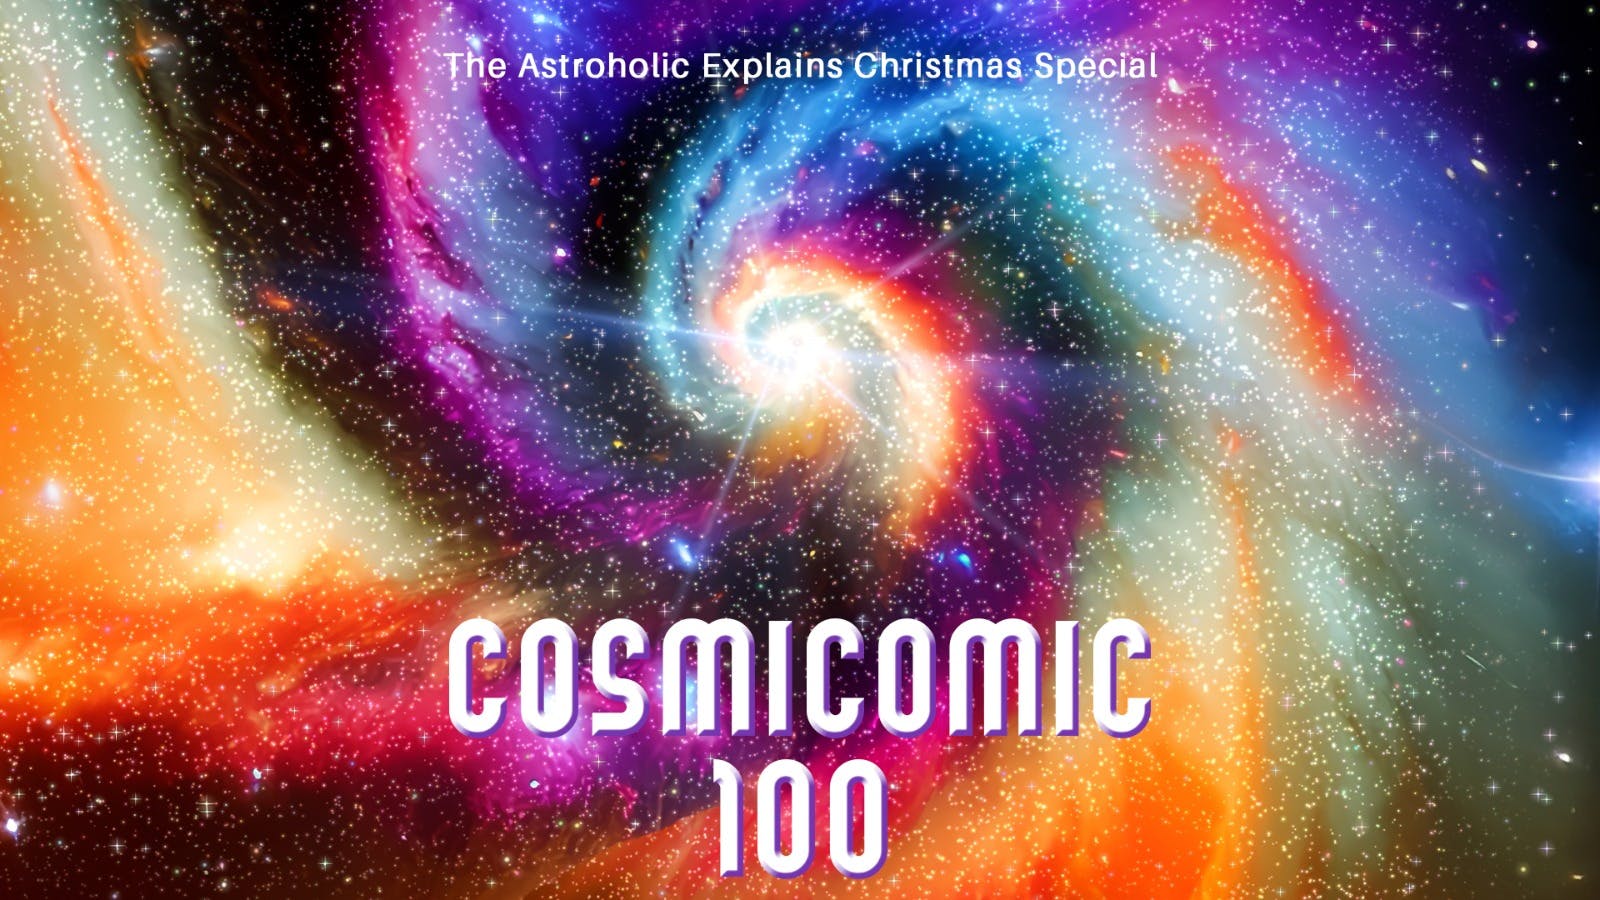 Cosmicomic 100